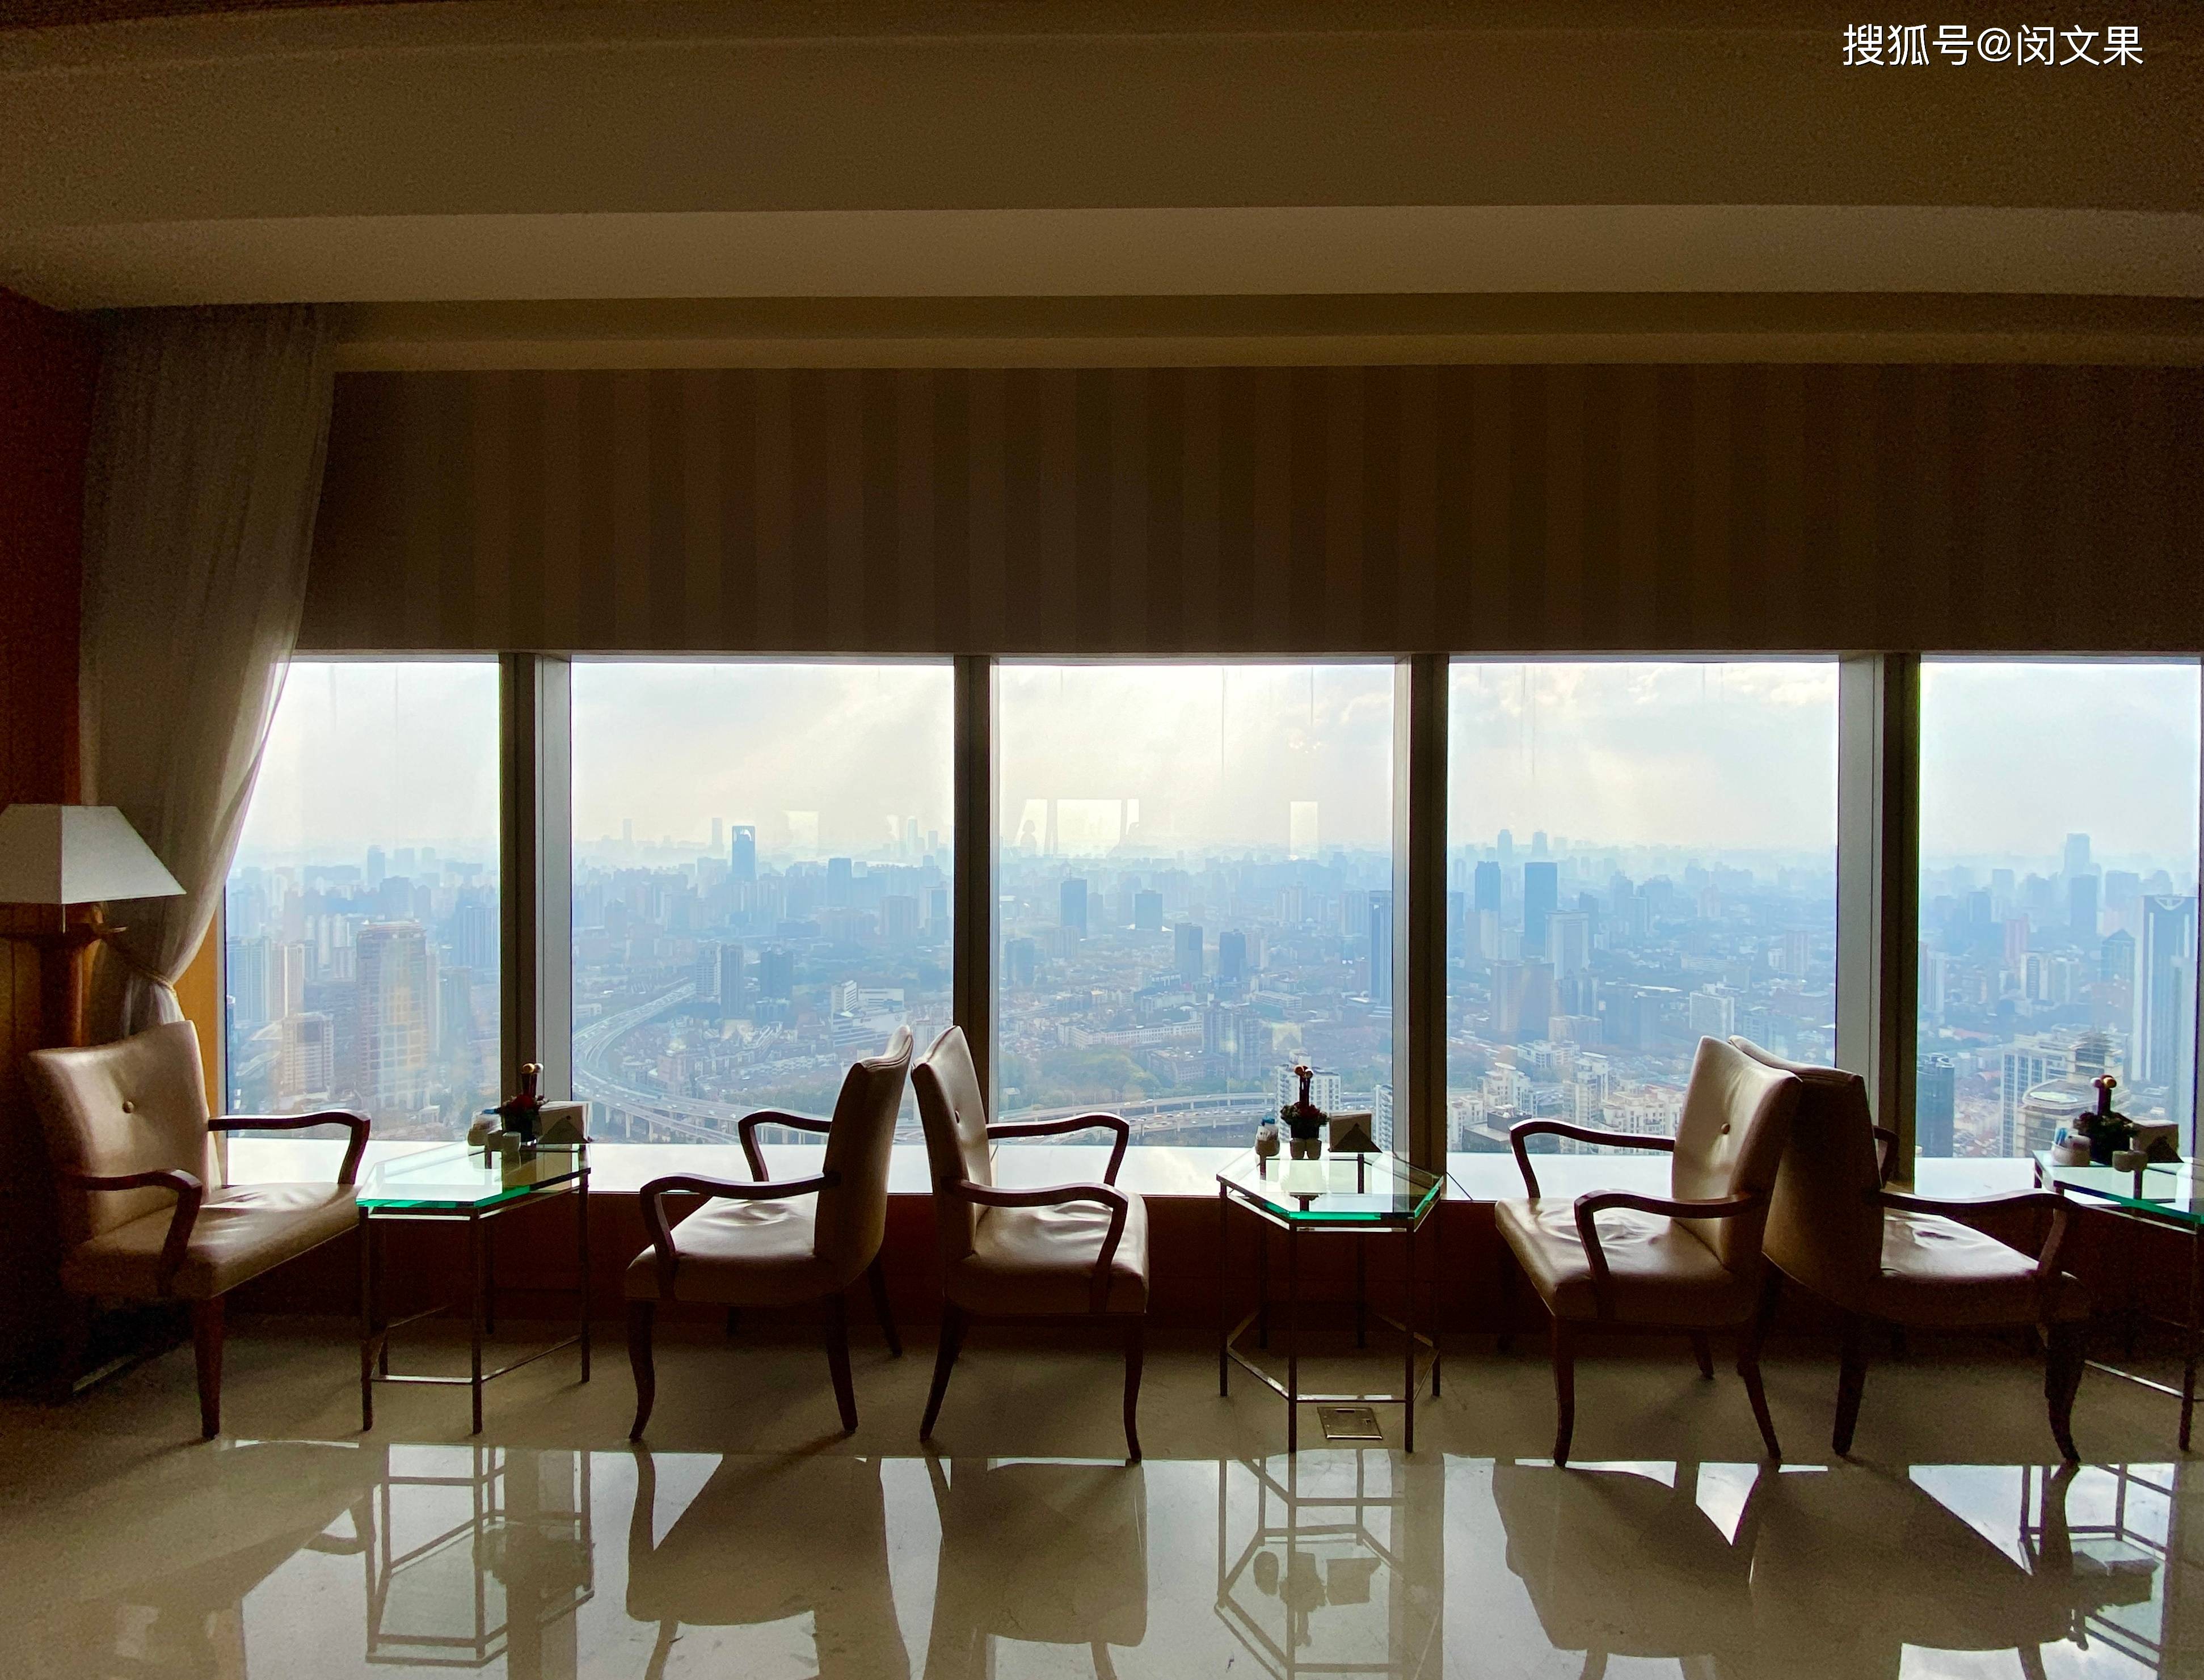 扎根繁华商圈,尽揽360度的全景城市风光|上海明天广场jw万豪酒店